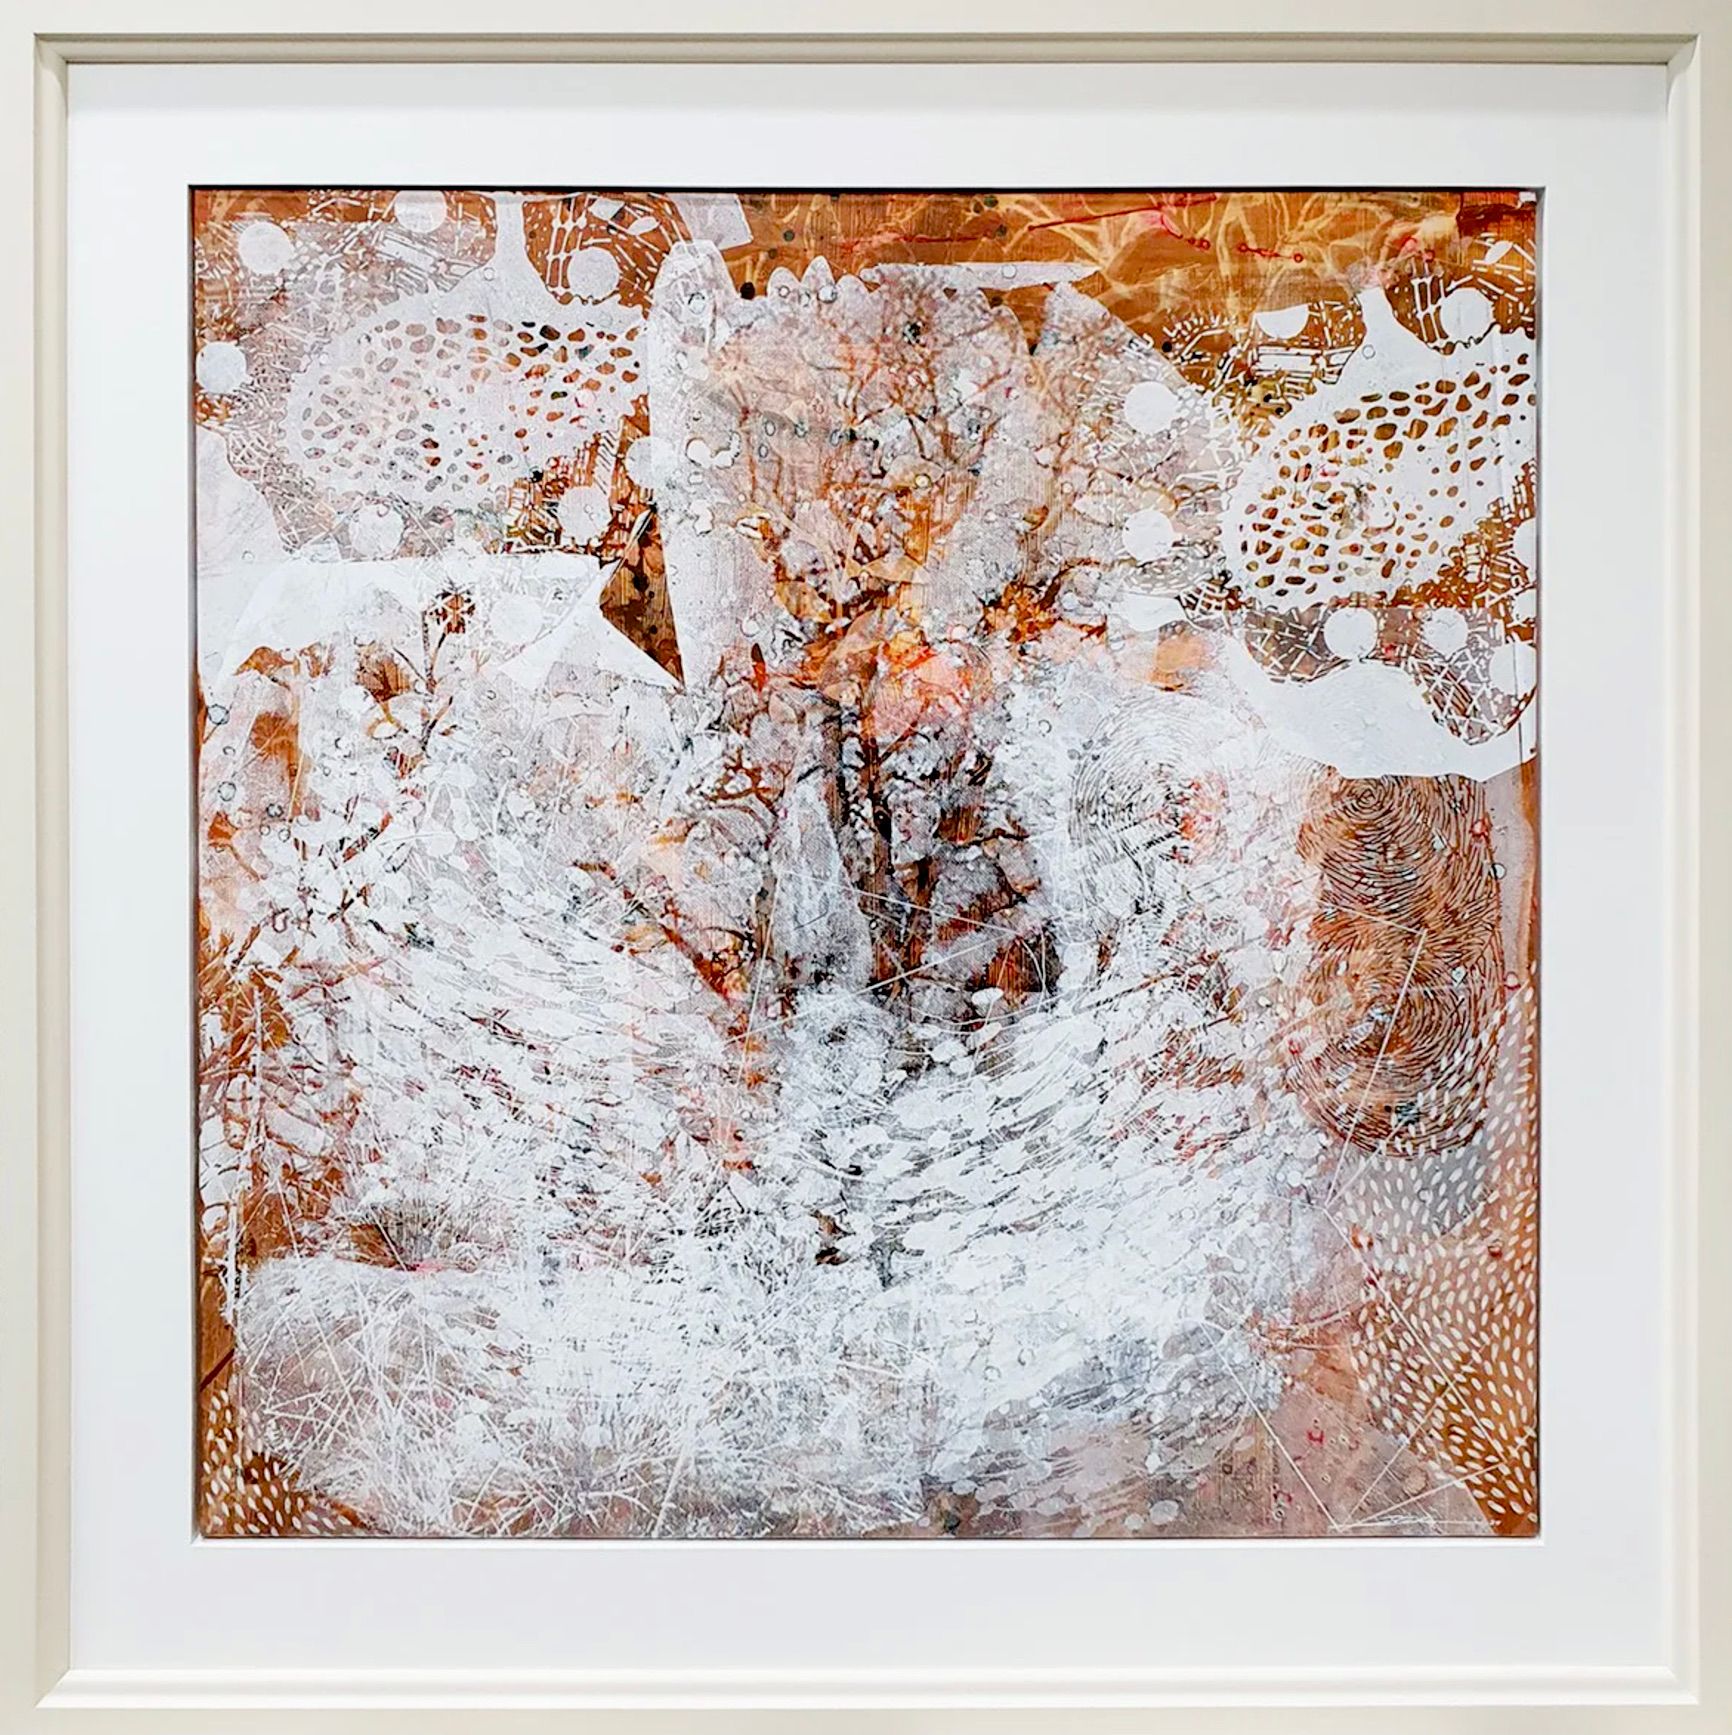 Dieter Nusbaum peinture abstraite sérigraphie arbre sans feuilles tempête de neige et nature formes